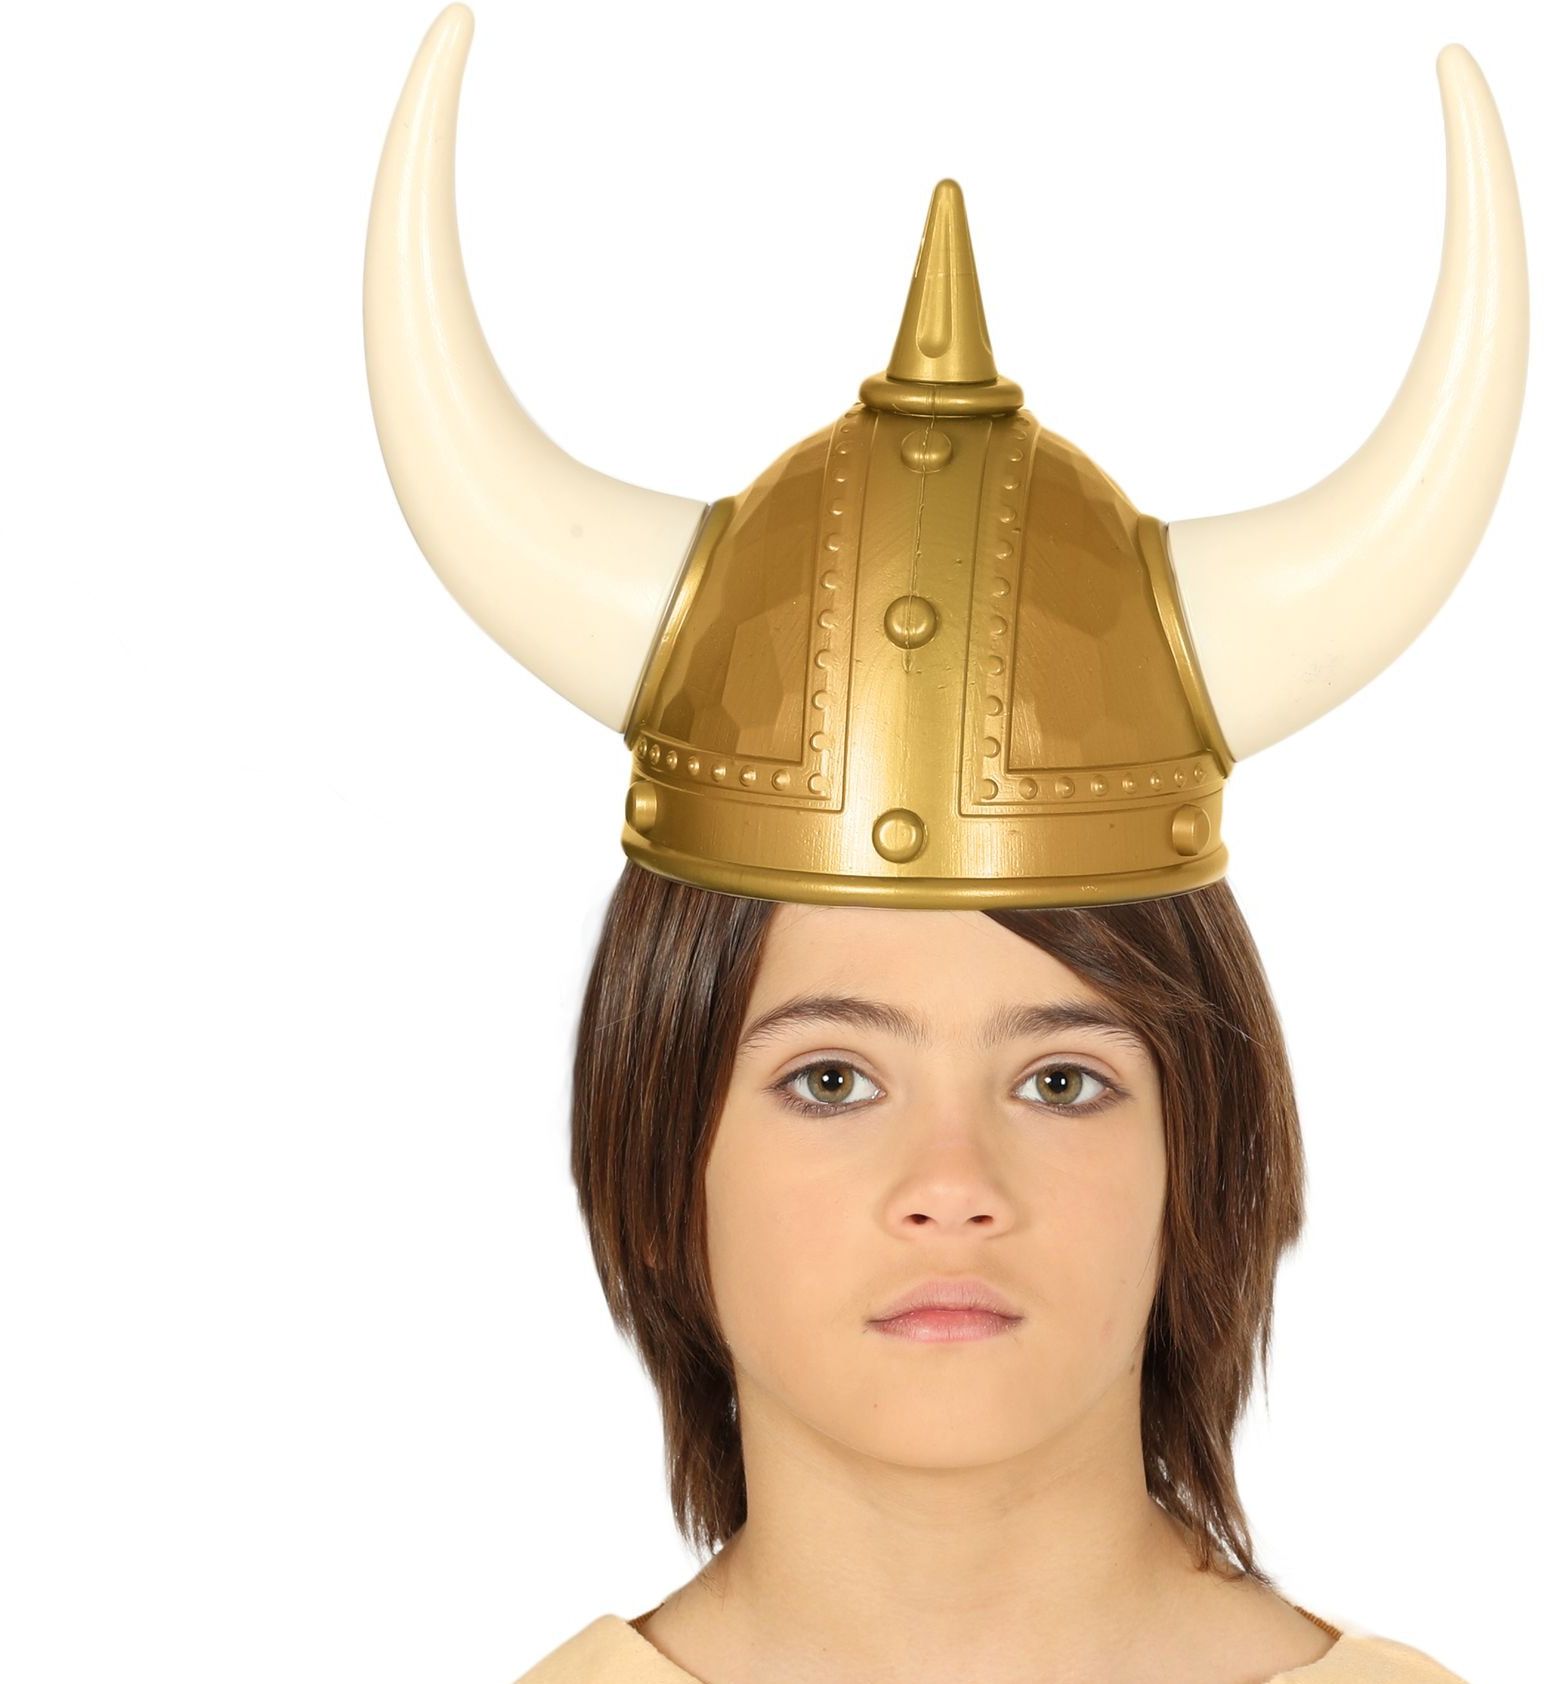 Grote Viking helm kind